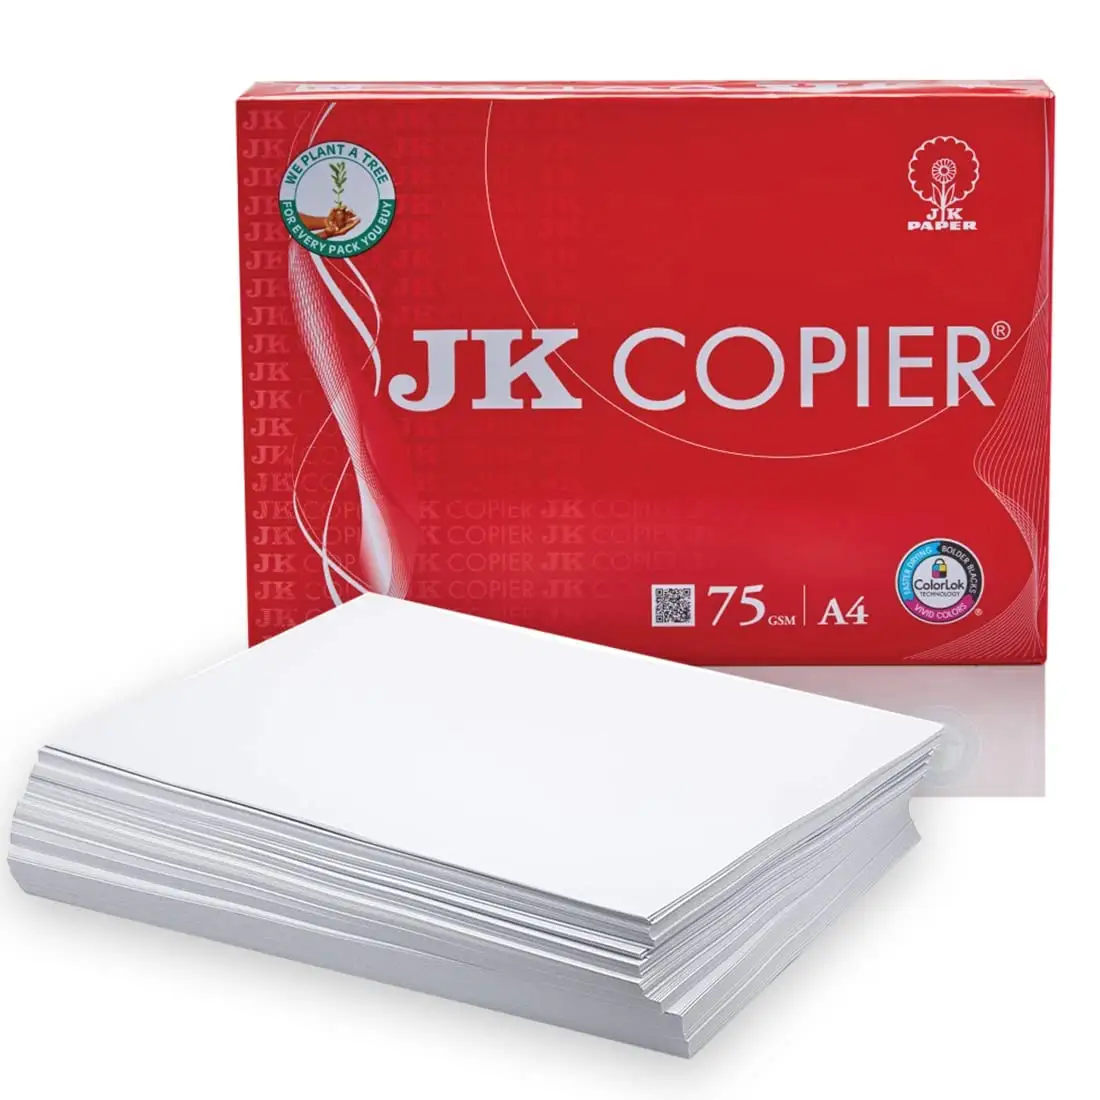 ขายร้อนราคาถูก JK เครื่องถ่ายเอกสาร A4, A3 เครื่องถ่ายเอกสาร/กระดาษถ่ายเอกสาร 80 gsm 70 gsm เครื่องพิมพ์ ream กระดาษ a4 ผู้ผลิตขายส่งราคา